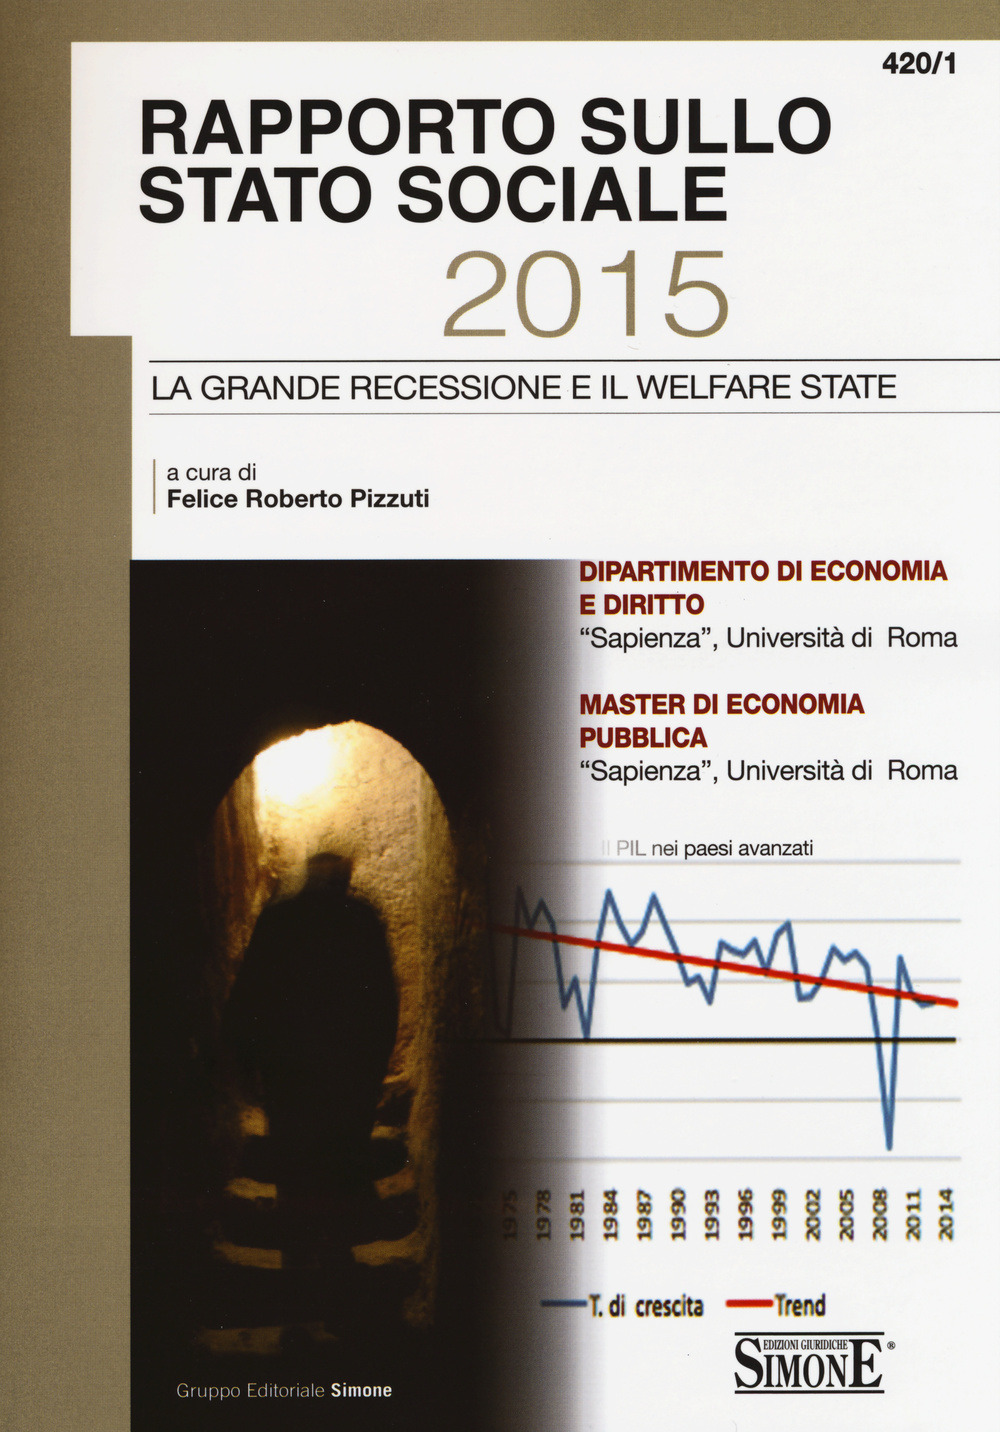 Rapporto sullo stato sociale 2015 - 420/1